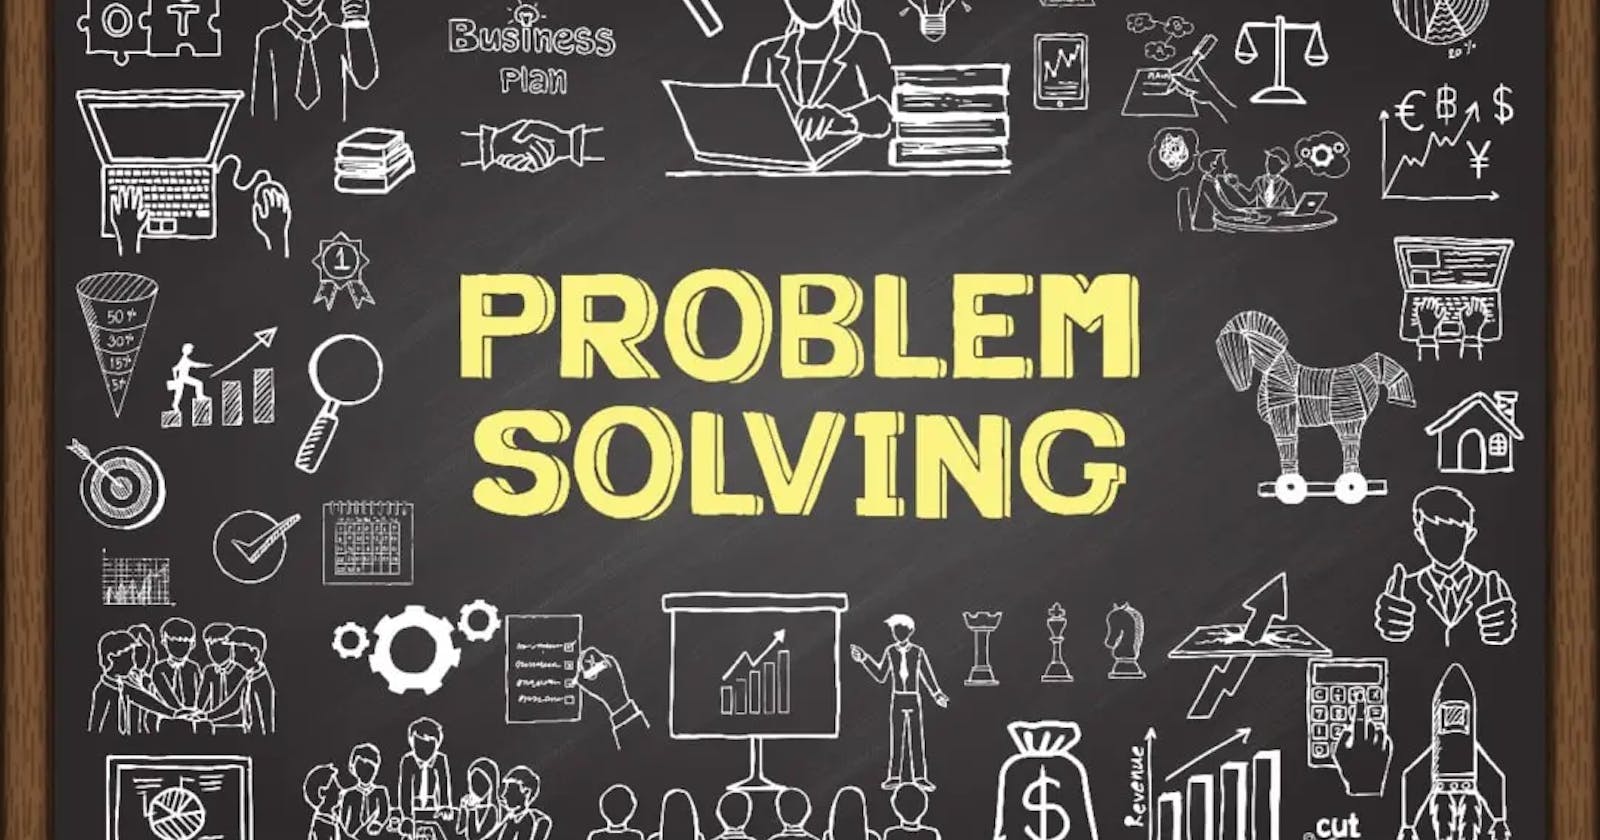 Let's talk about Problem Solving